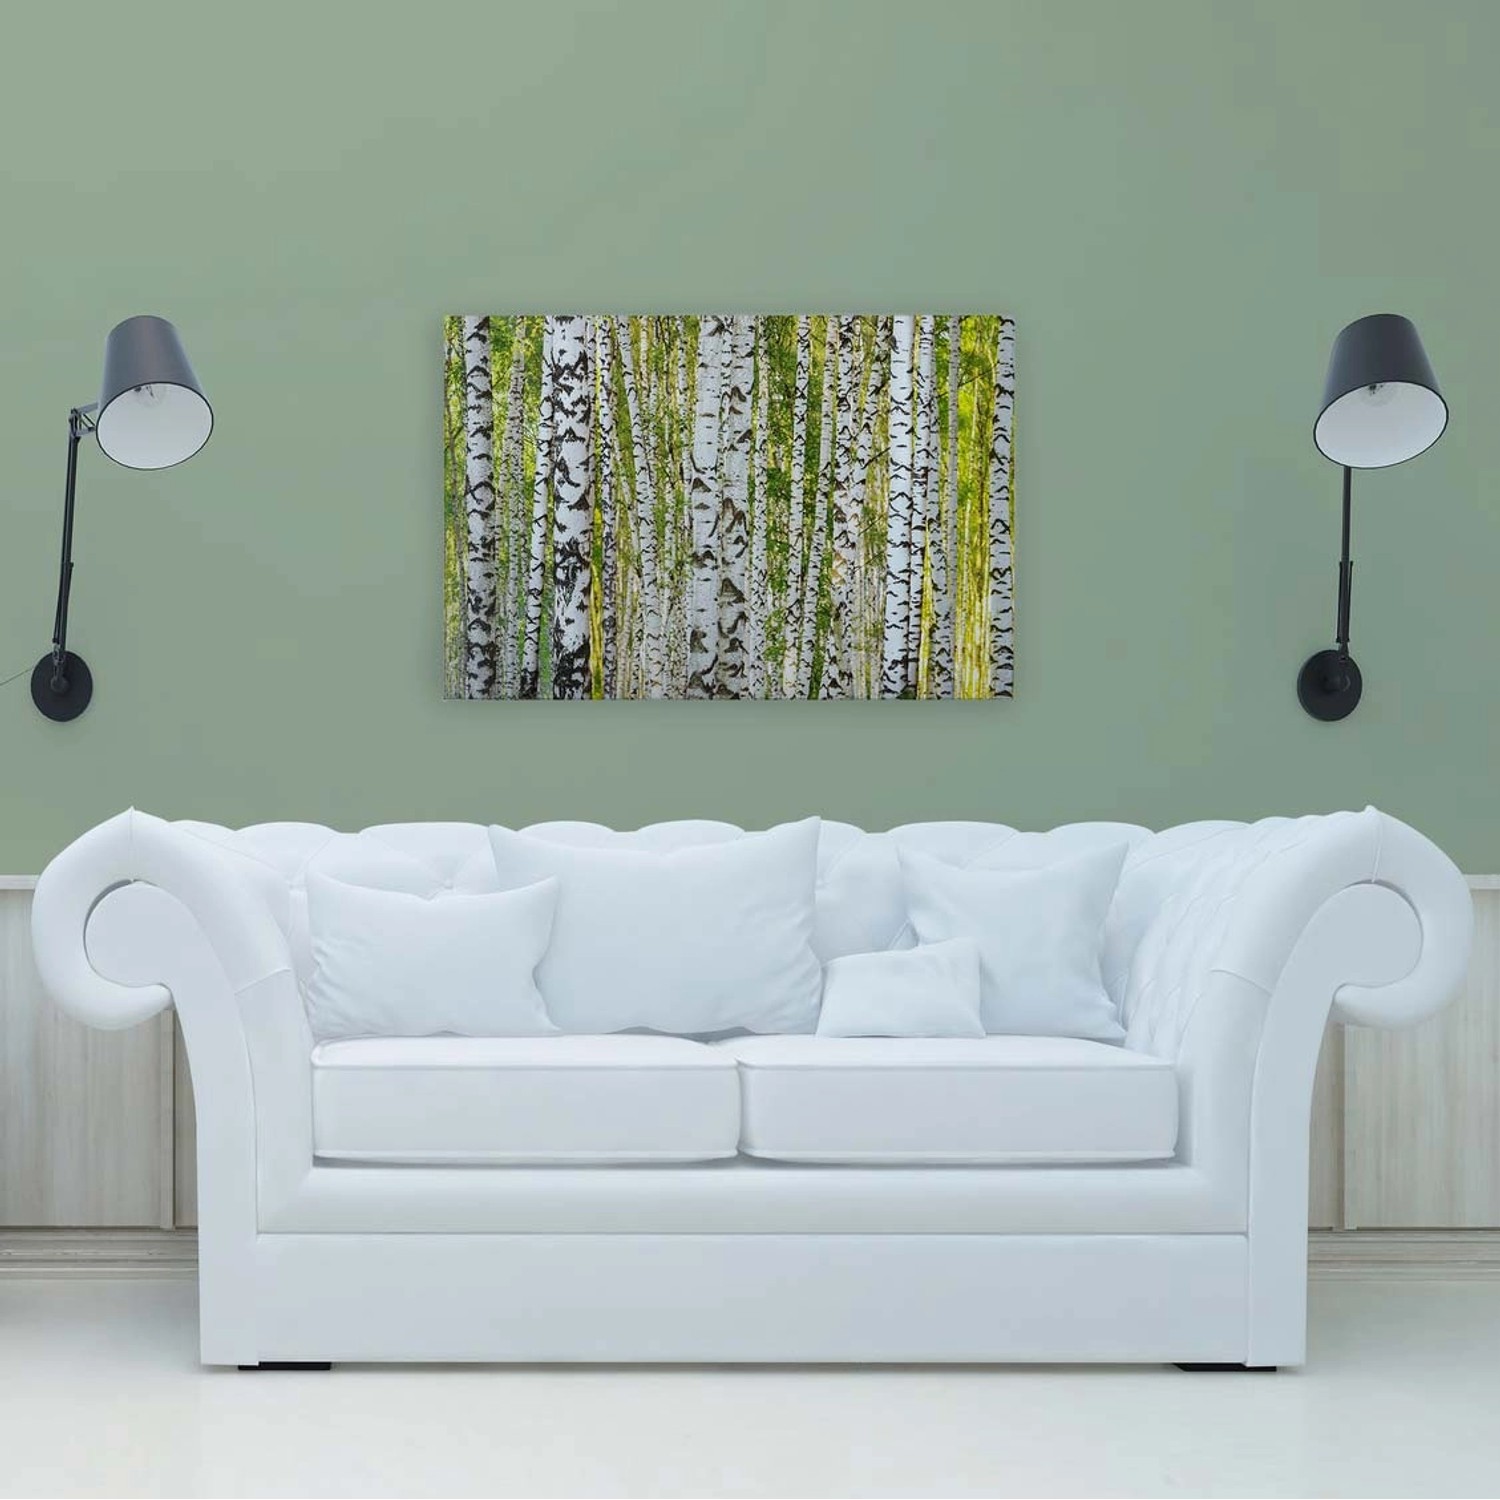 Bricoflor Birkenwald Leinwand Bild Grün Weiß Wandbild Mit Wald Motiv Für Wohnzimmer Und Schlafzimmer Birken Leinwandbild